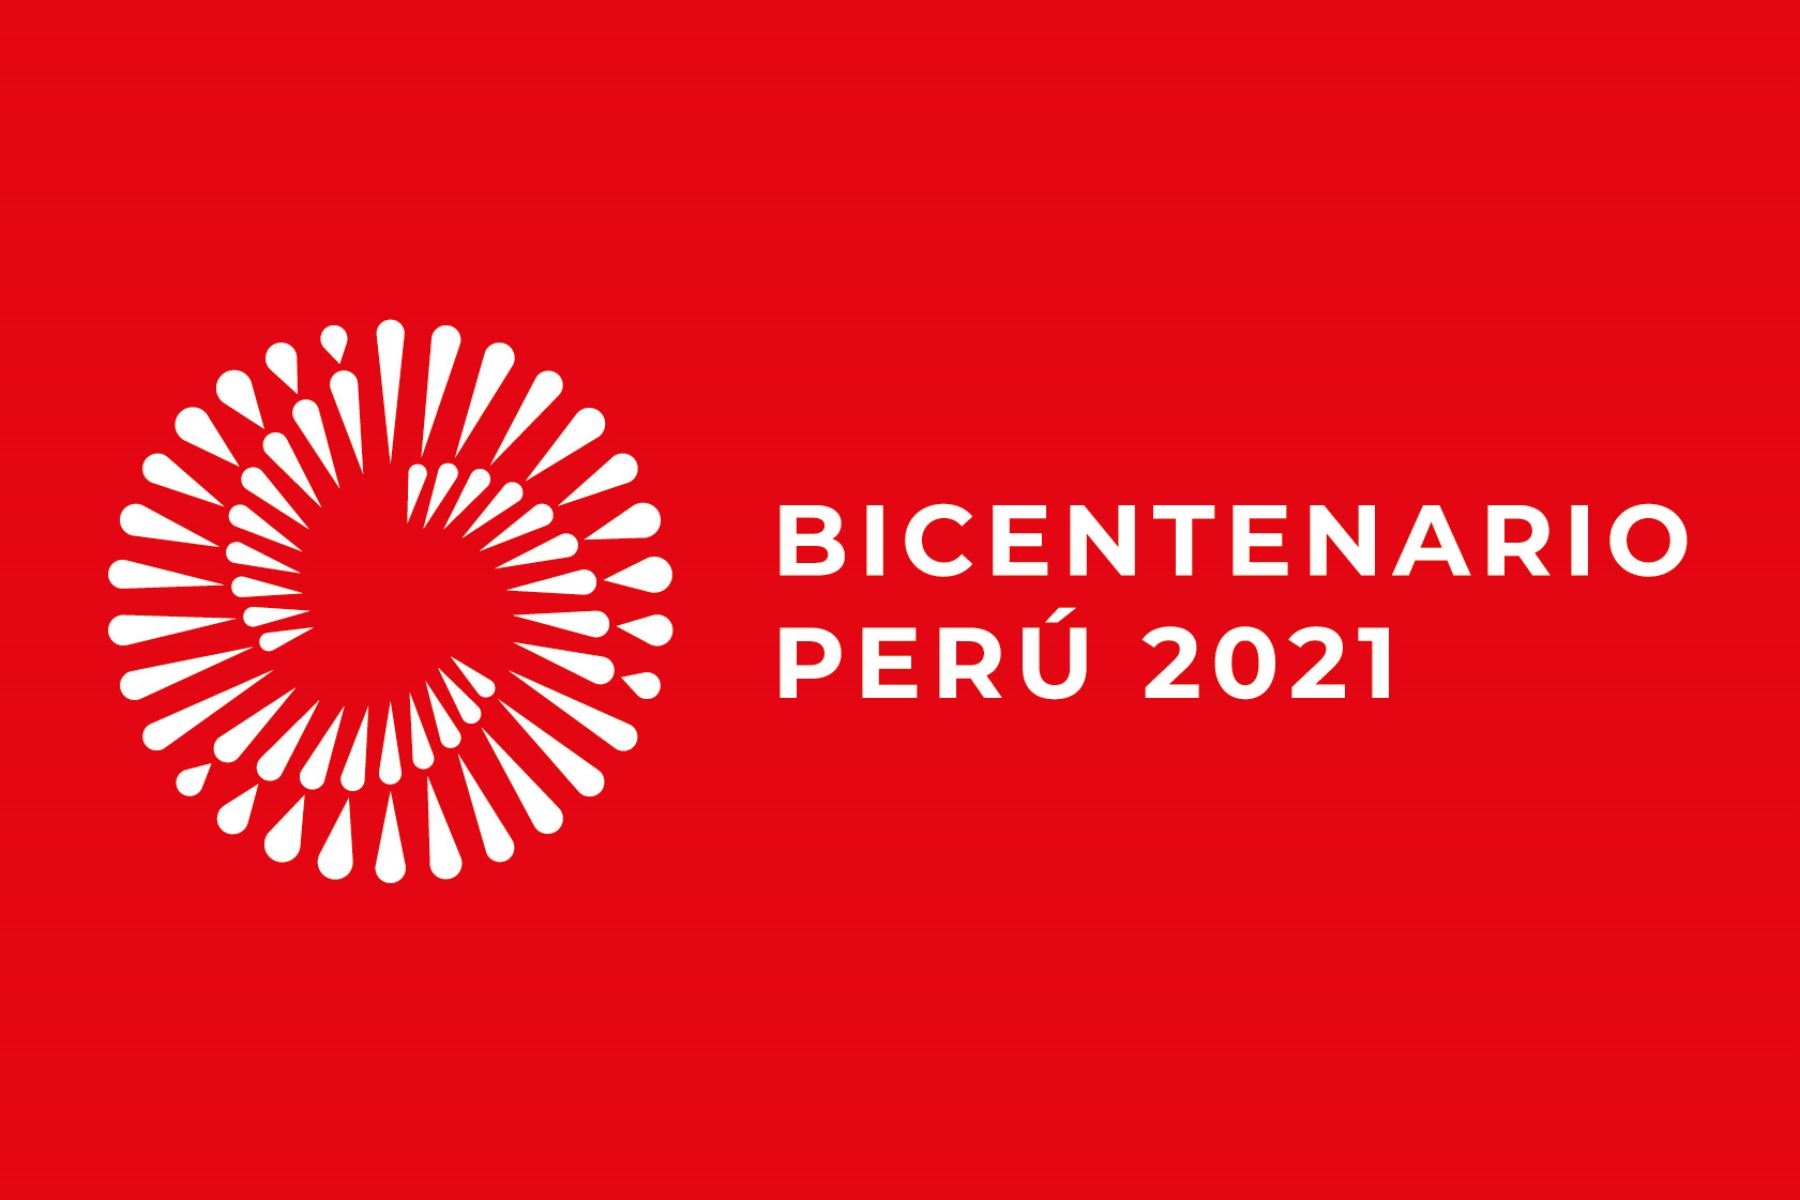 Sự kiện kỷ niệm 200 năm Quốc khánh Peru: Từ quá khứ đến hiện tại